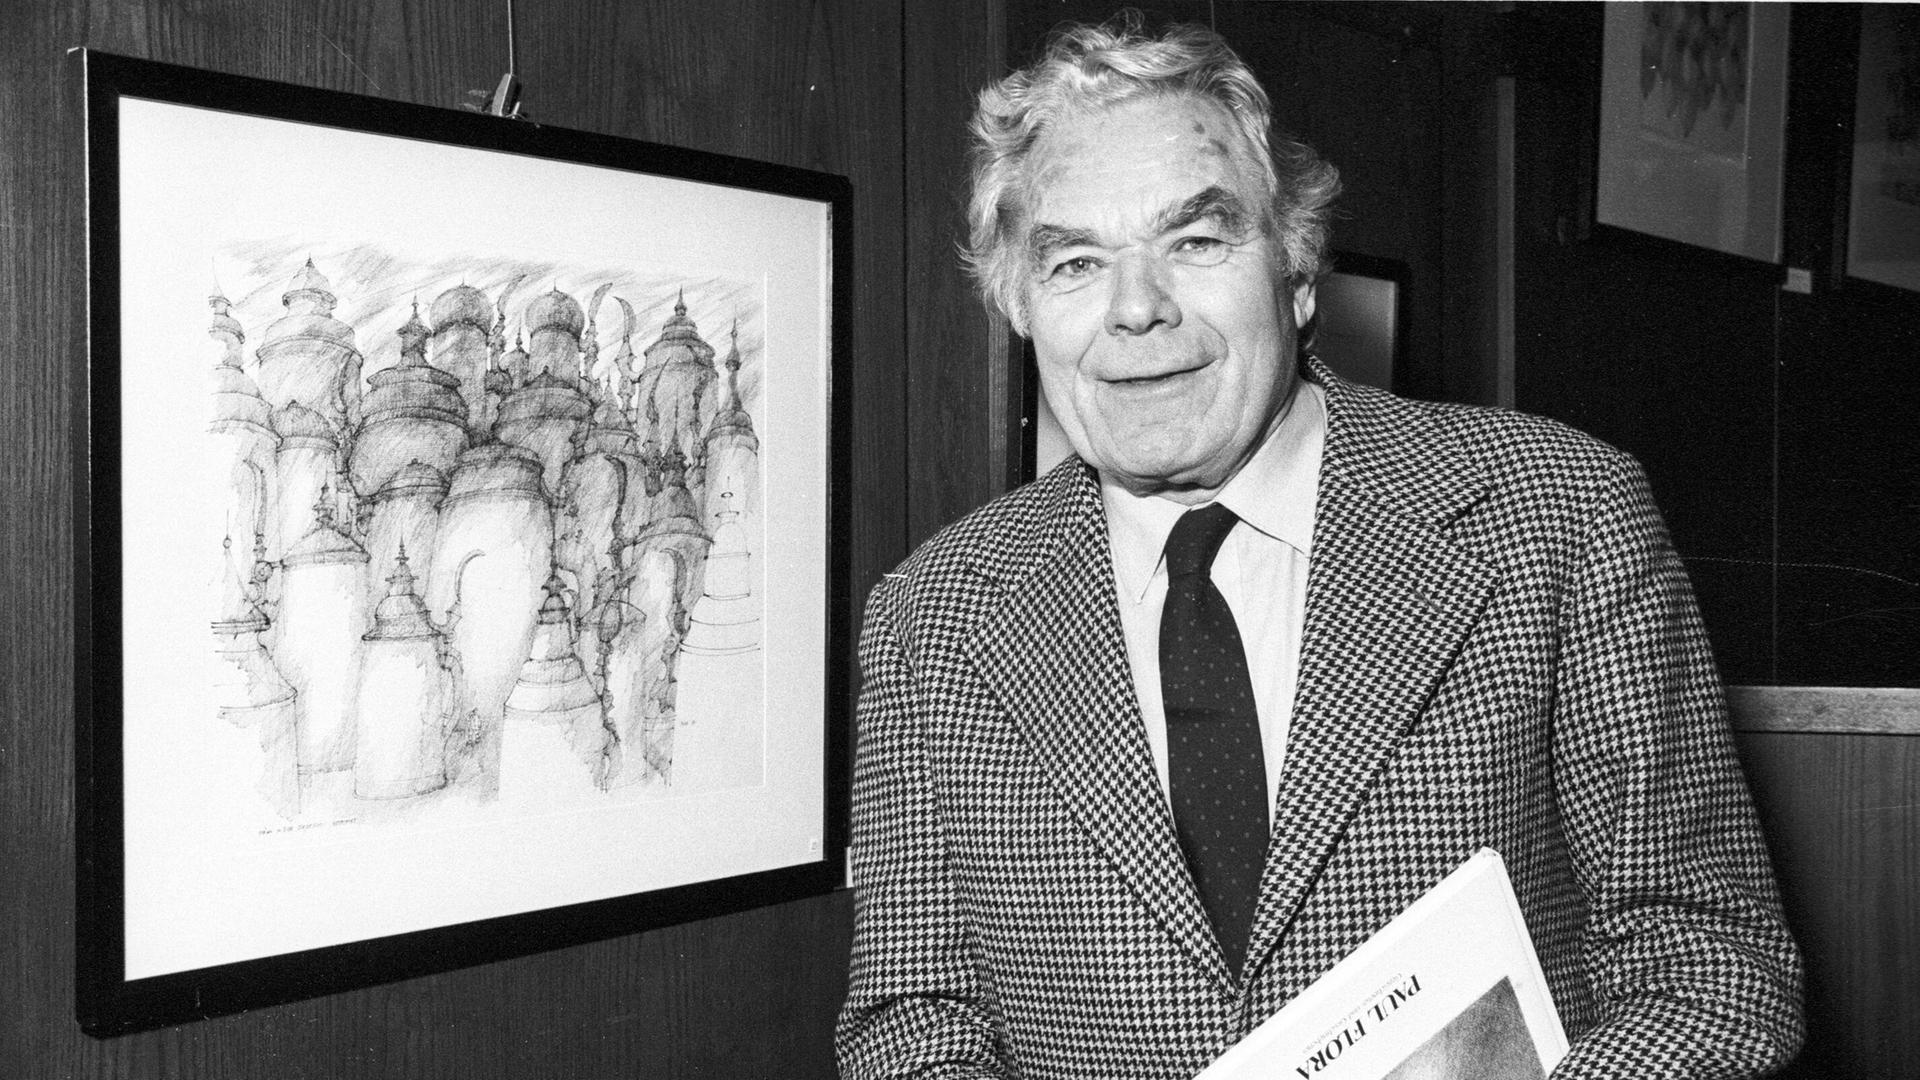 Der österreichische Maler, Zeichner, Grafiker, Illustrator, Karikaturist und Schriftsteller Paul Flora  in einer Aufnahme von 1990